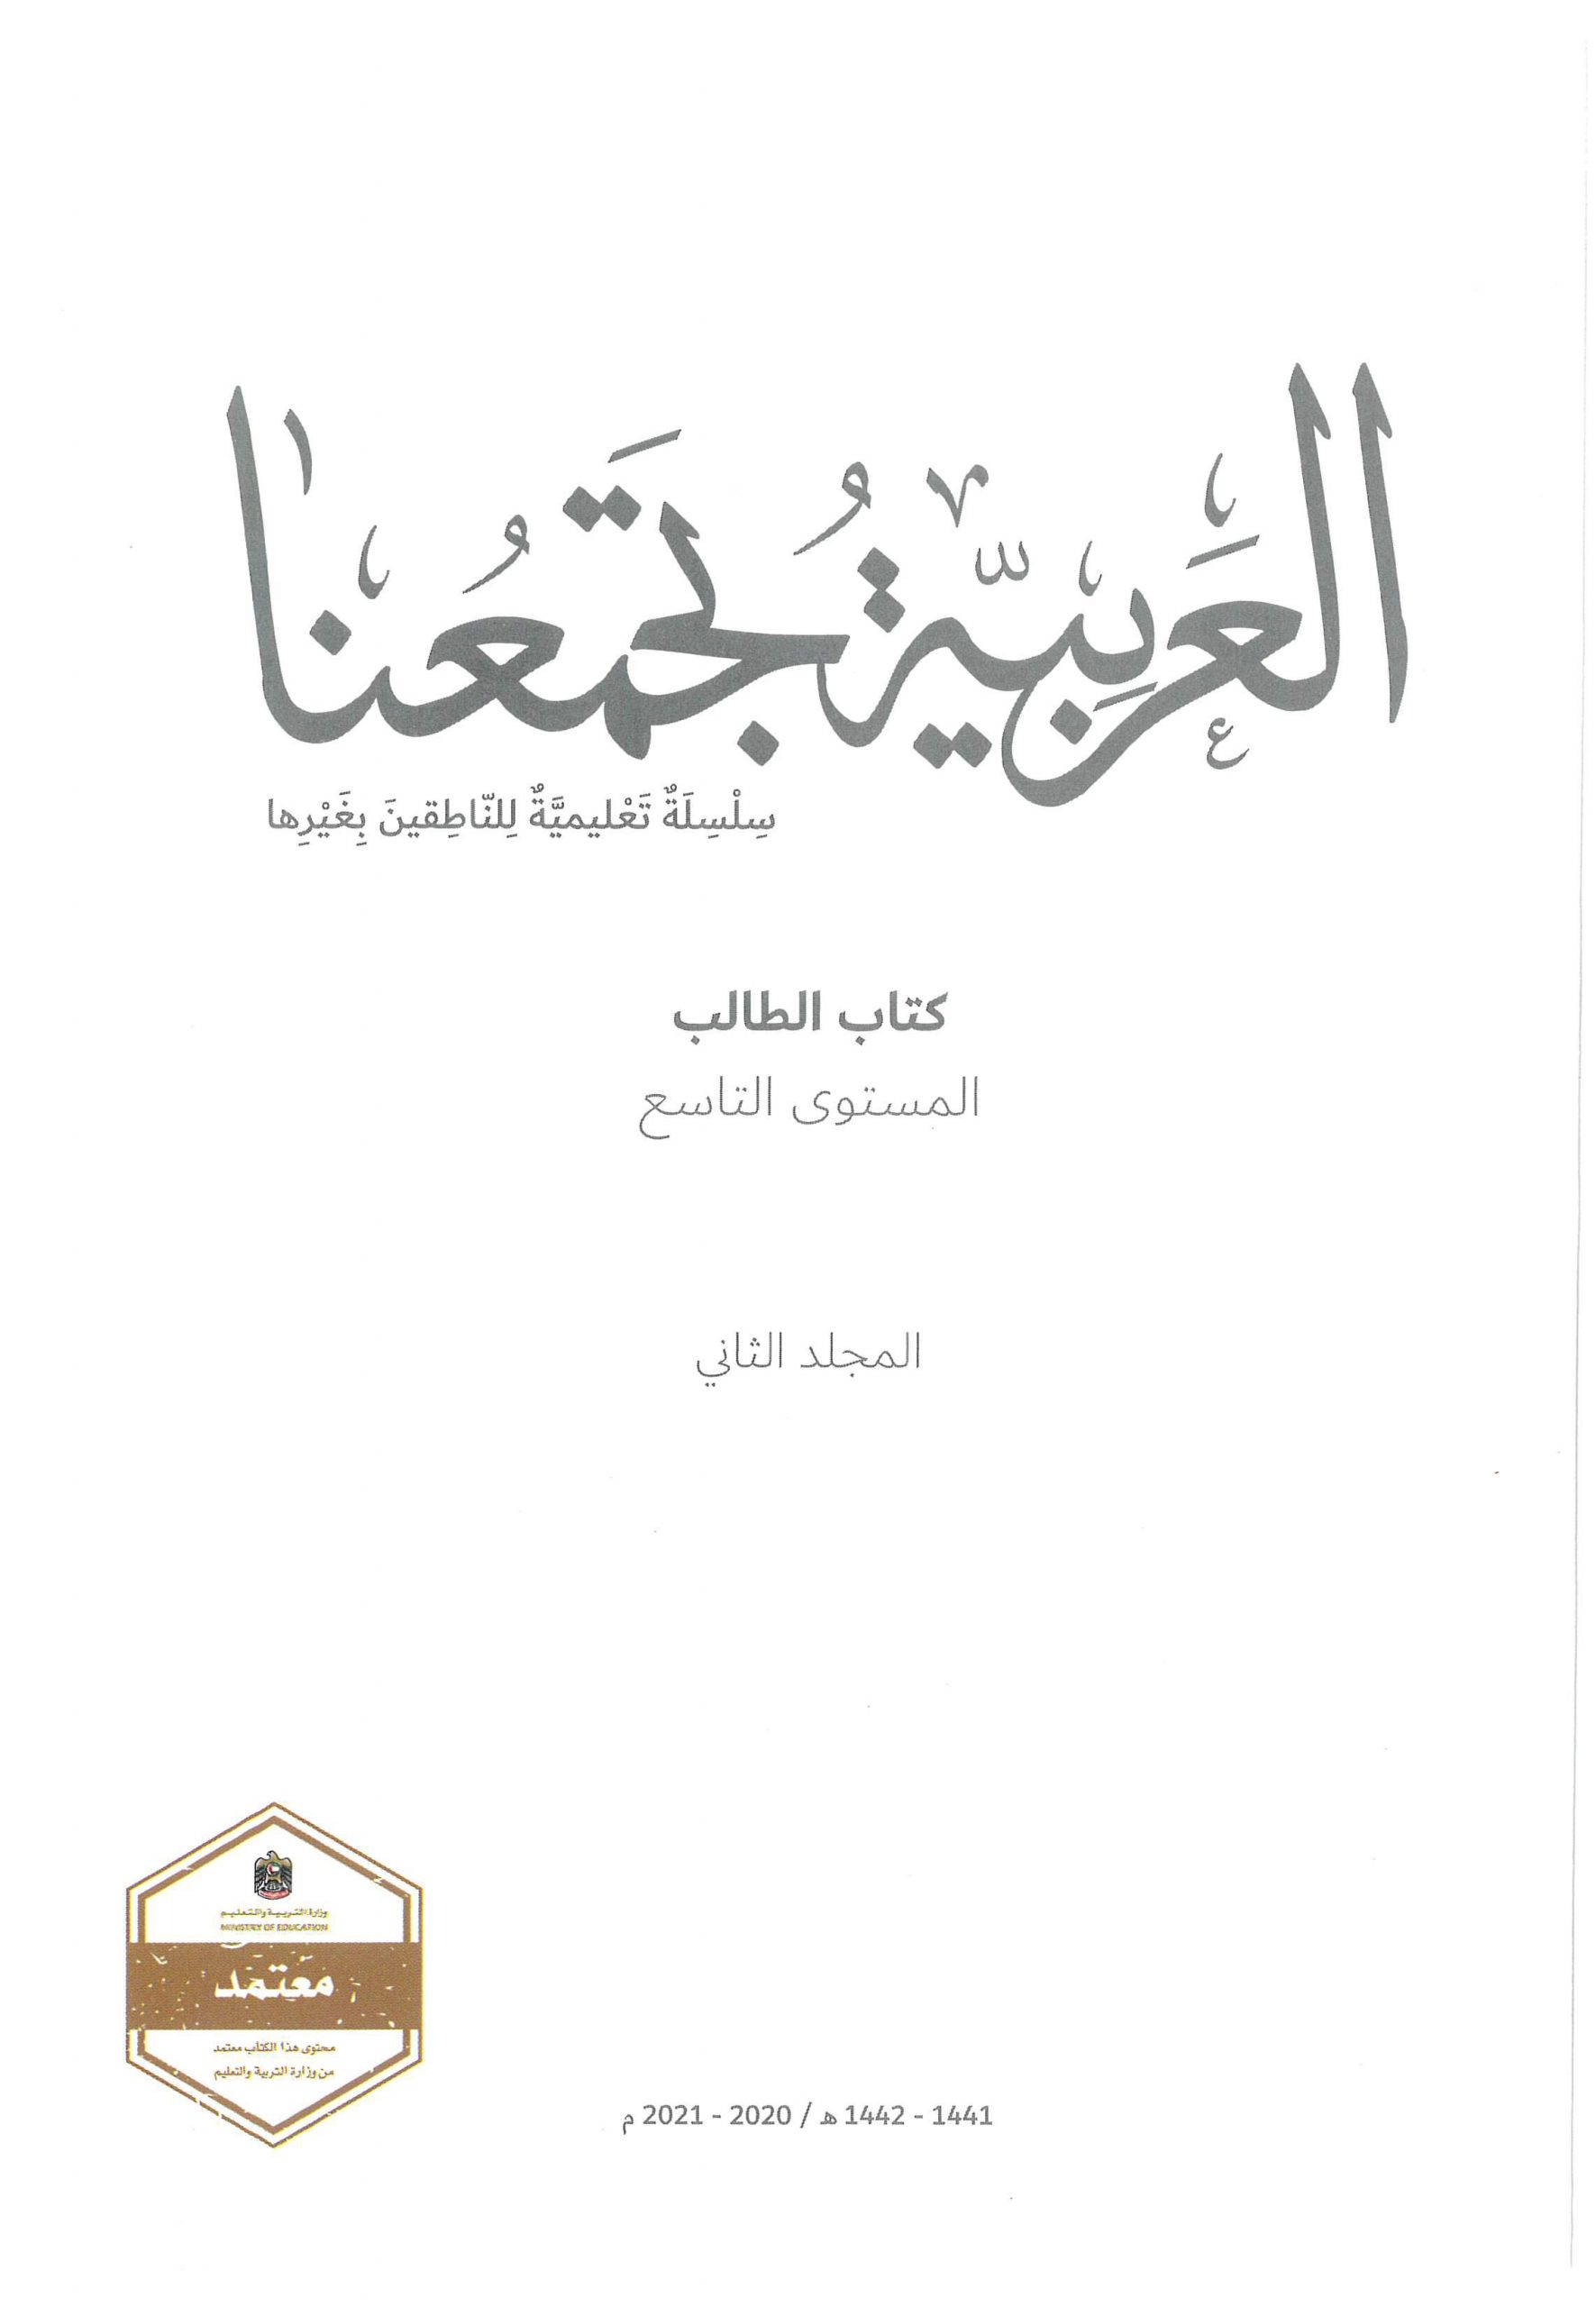 كتاب الطالب الفصل الدراسي الثاني 2020-2021 لغير الناطقين بها الصف التاسع مادة اللغة العربية 